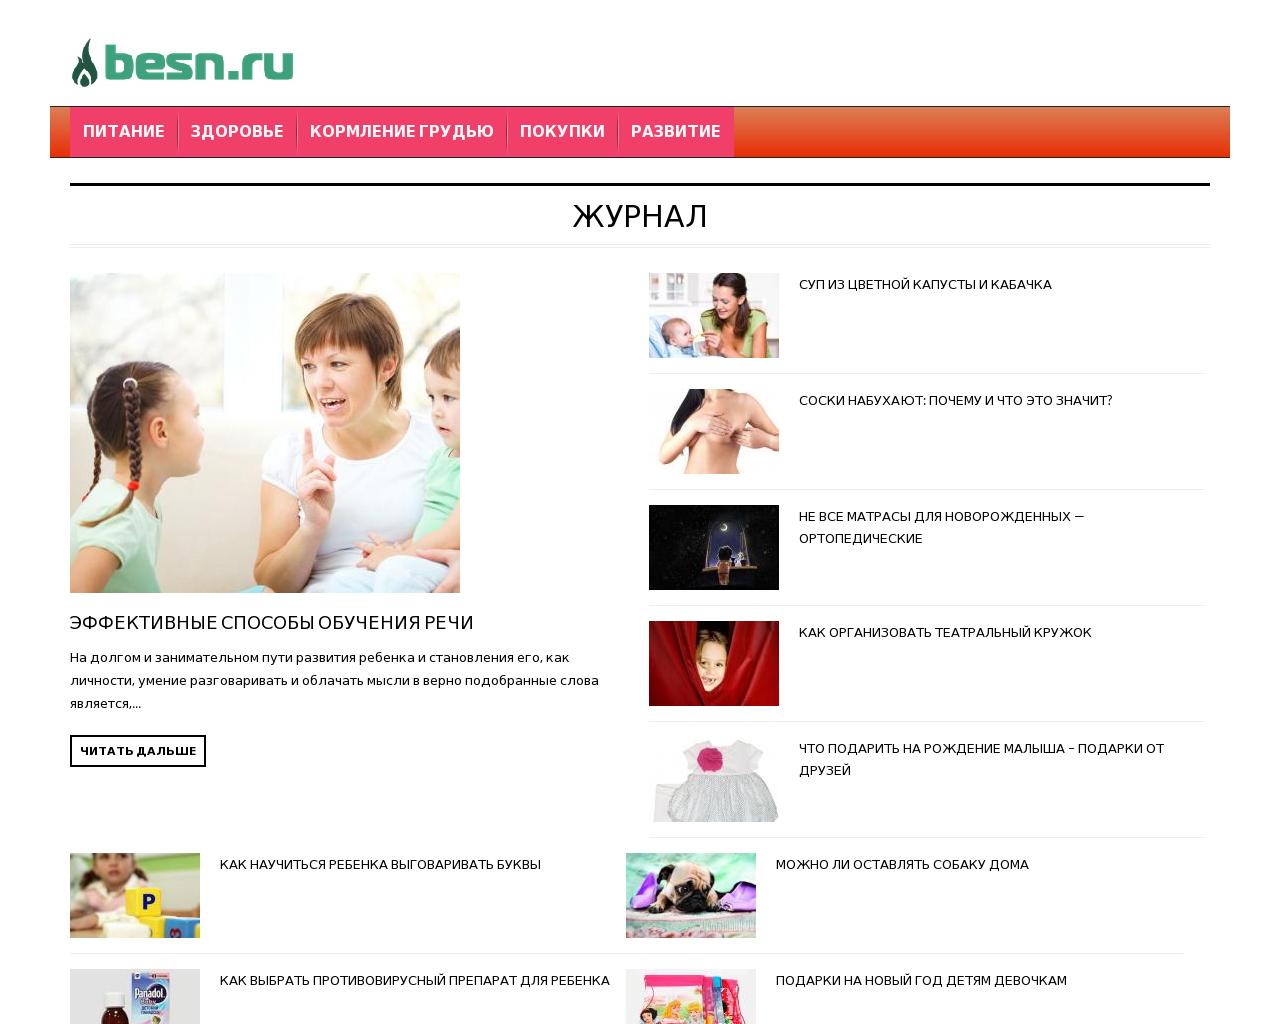 Изображение сайта besn.ru в разрешении 1280x1024